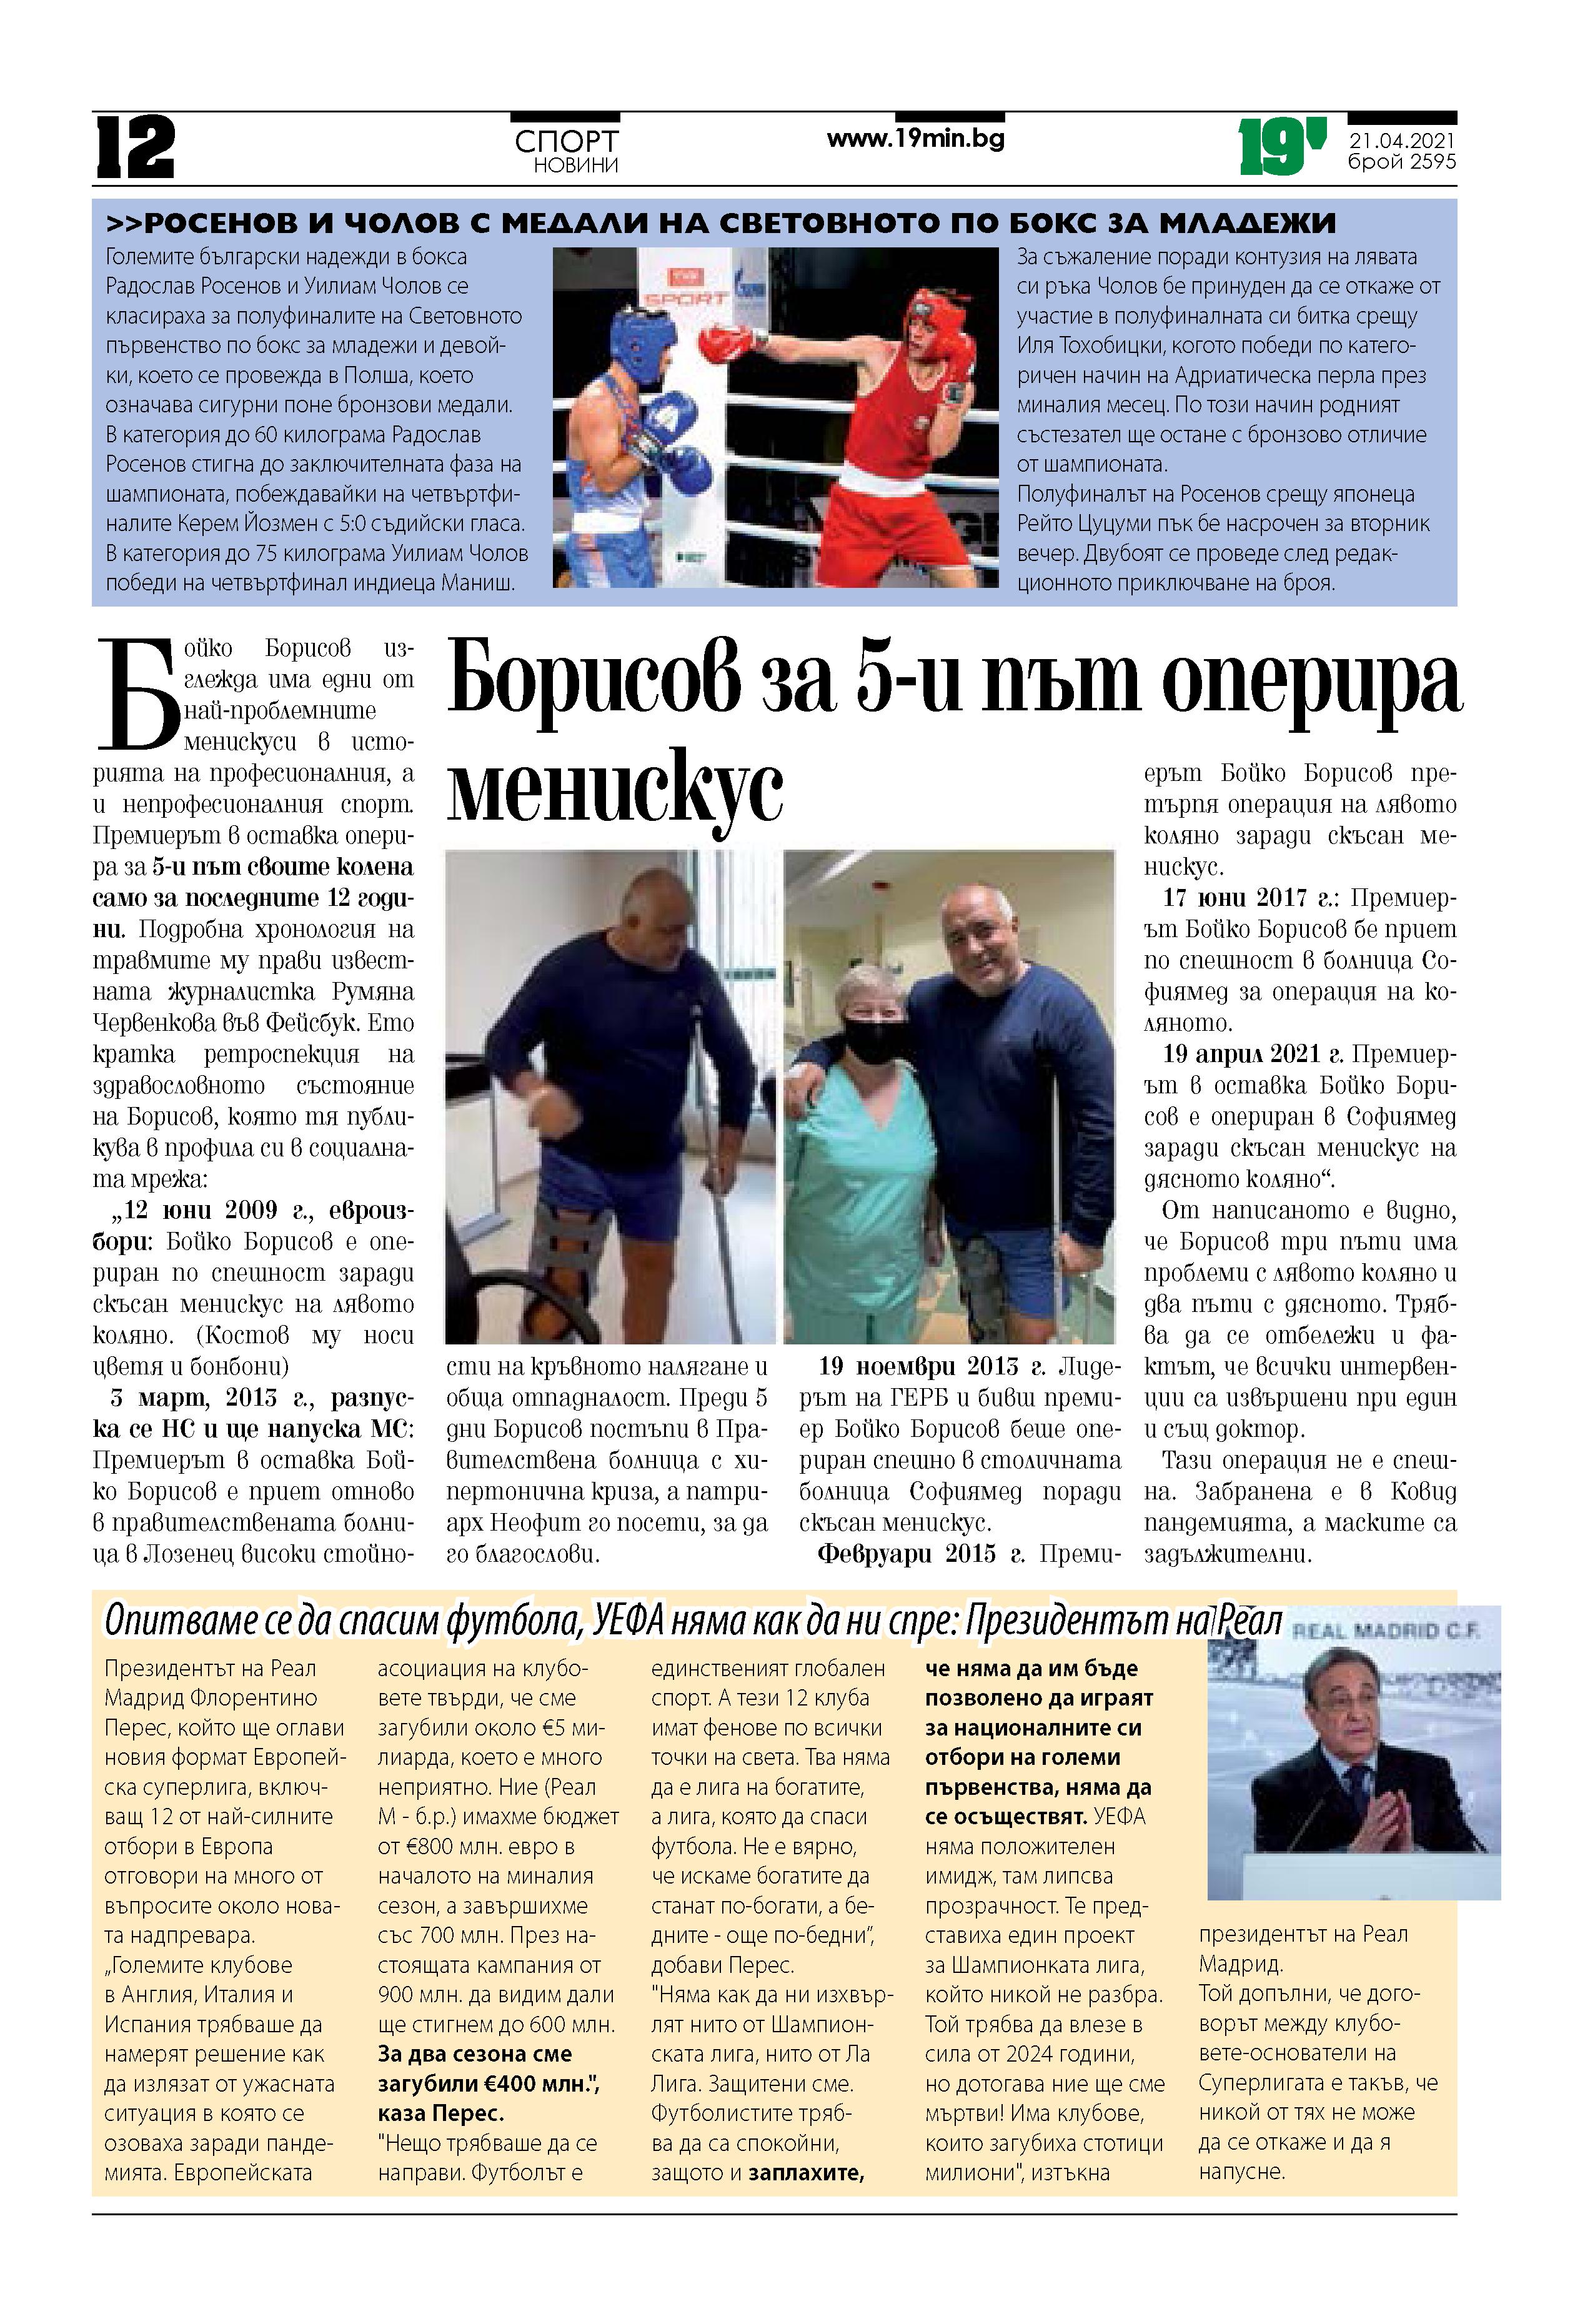 Борисов за 5-и път оперира менискус